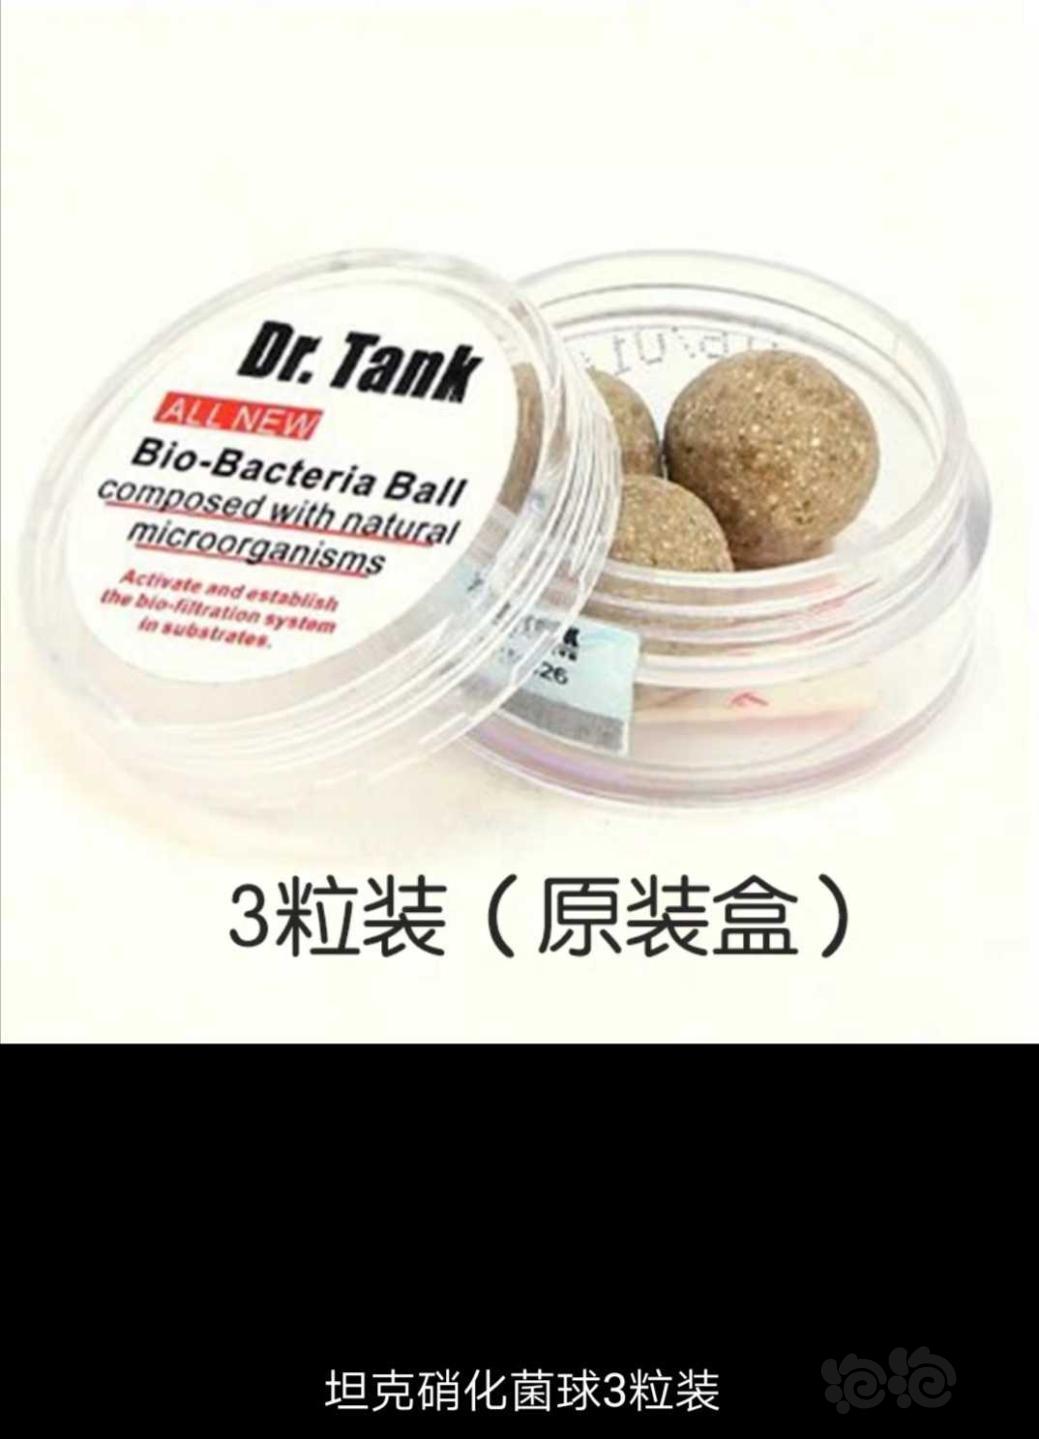 【用品】2019-11-04#RMB拍卖坦克二代硝化细菌球三粒装*3盒-图2